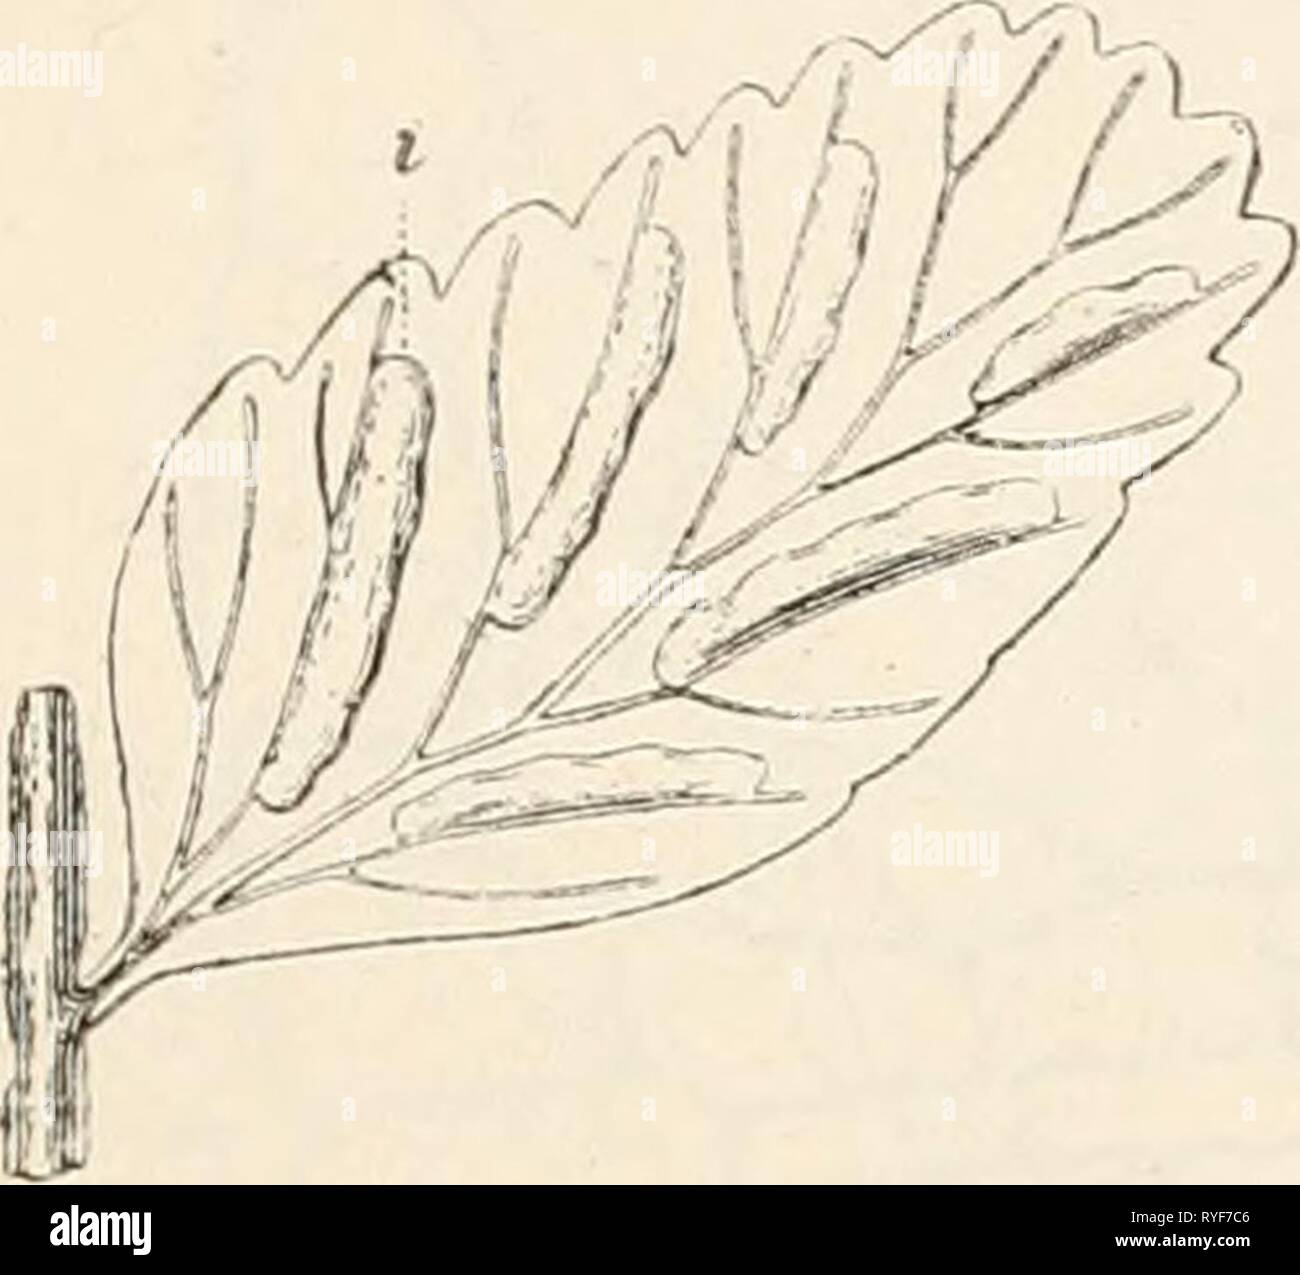 Dr. L. Rabenhorst's Kryptogamen-Flora von Deutschland, Oesterreich und der Schweiz  drlrabenhorstskr03rabe Year: 1889  21 liieren- oder halbkreisförmige SclRipi)e den Sorus von obcni ver- hüllend (oberständi^er Schleier, indusium superuni, — Aspidiuni, Xephrolepis, — Fig. 27, 28), oder der Schleiei- unterhalb des Sorus am Keceptaculum entspringend und sich muscheltorniig über den Sorus biegend (Cystopteris, Onoclea) oder letzteren in Gestalt eines ganzrandigen oder zerschlitzten Bechers stützend (Hymenophyllaceen, Cyathea, Woodsia^ oder gar zu einem den Fig. Fig. 25. Stock Photo